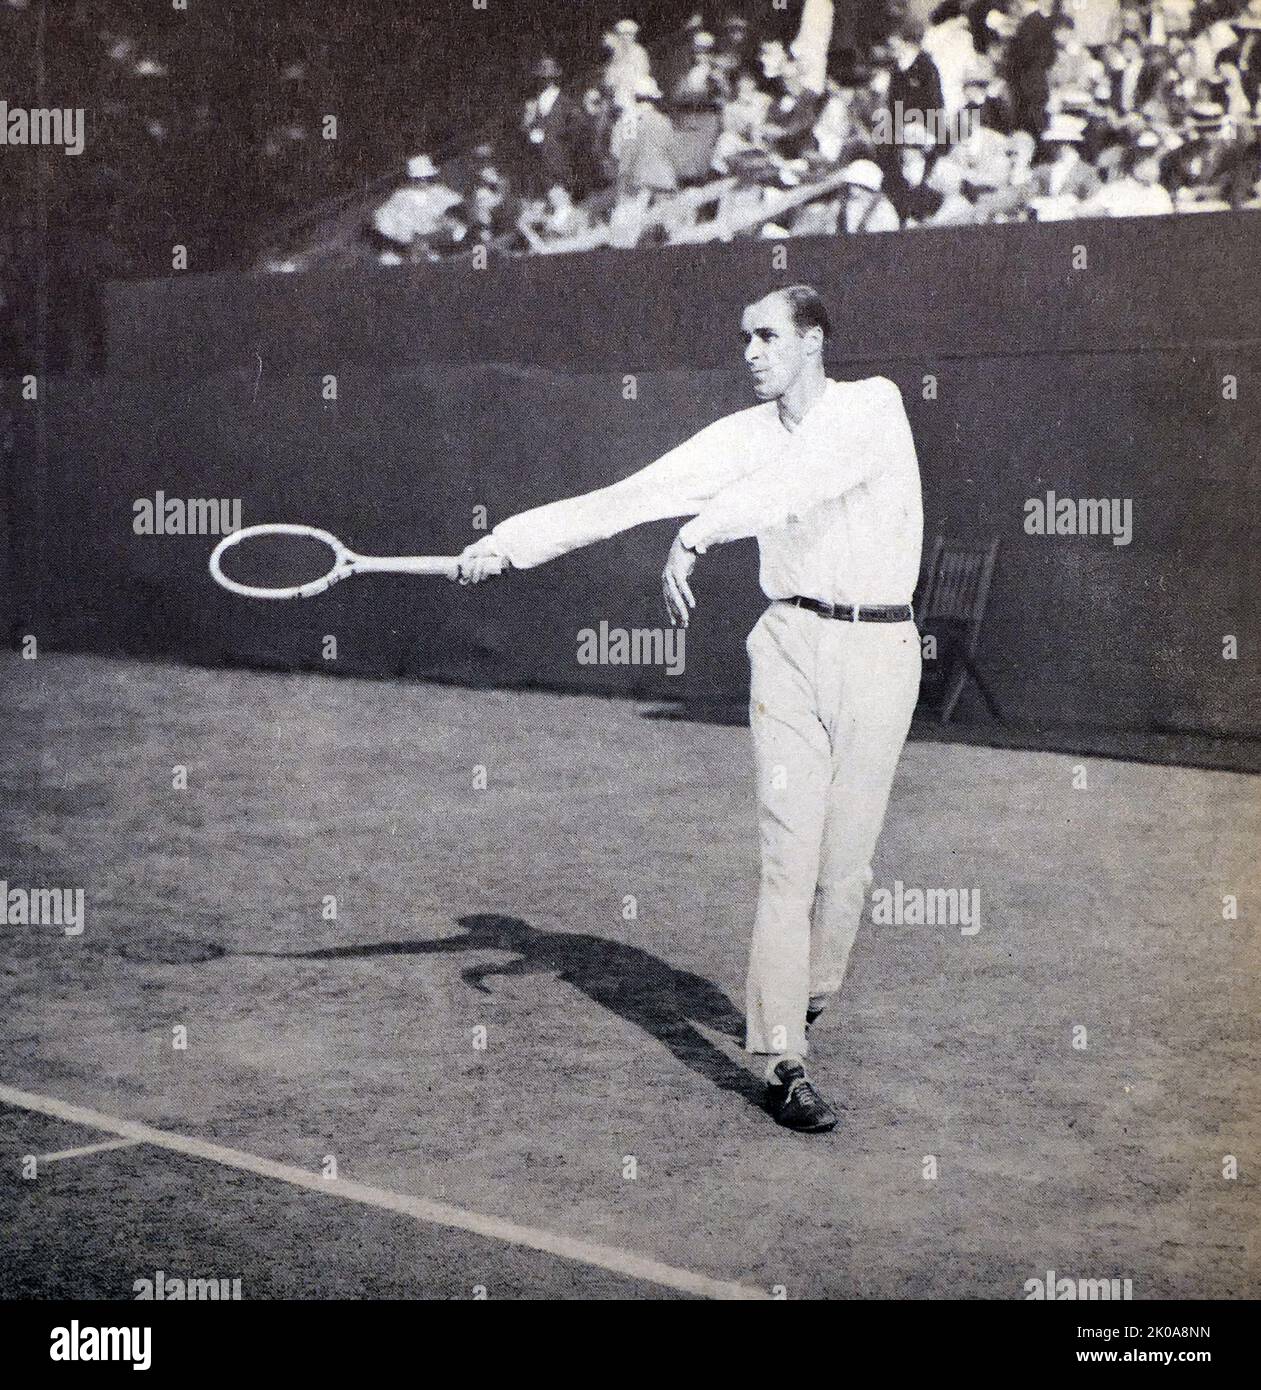 William Tatem Tilden II (New York, 10 febbraio 1893 – New York, 5 giugno 1953) è stato un . Tilden è stato il numero 1 dilettante del mondo per sei anni dal 1920 al 1925. Ha vinto 14 grandi titoli singoli, tra cui 10 eventi Grand Slam, un campionato mondiale di hard Court e tre major professionisti. Fu il primo americano a vincere Wimbledon, prendendo il titolo nel 1920. Ha anche vinto un record di sette titoli di U.S. Championships (condiviso con Richard Sears e Bill Larned). Foto Stock